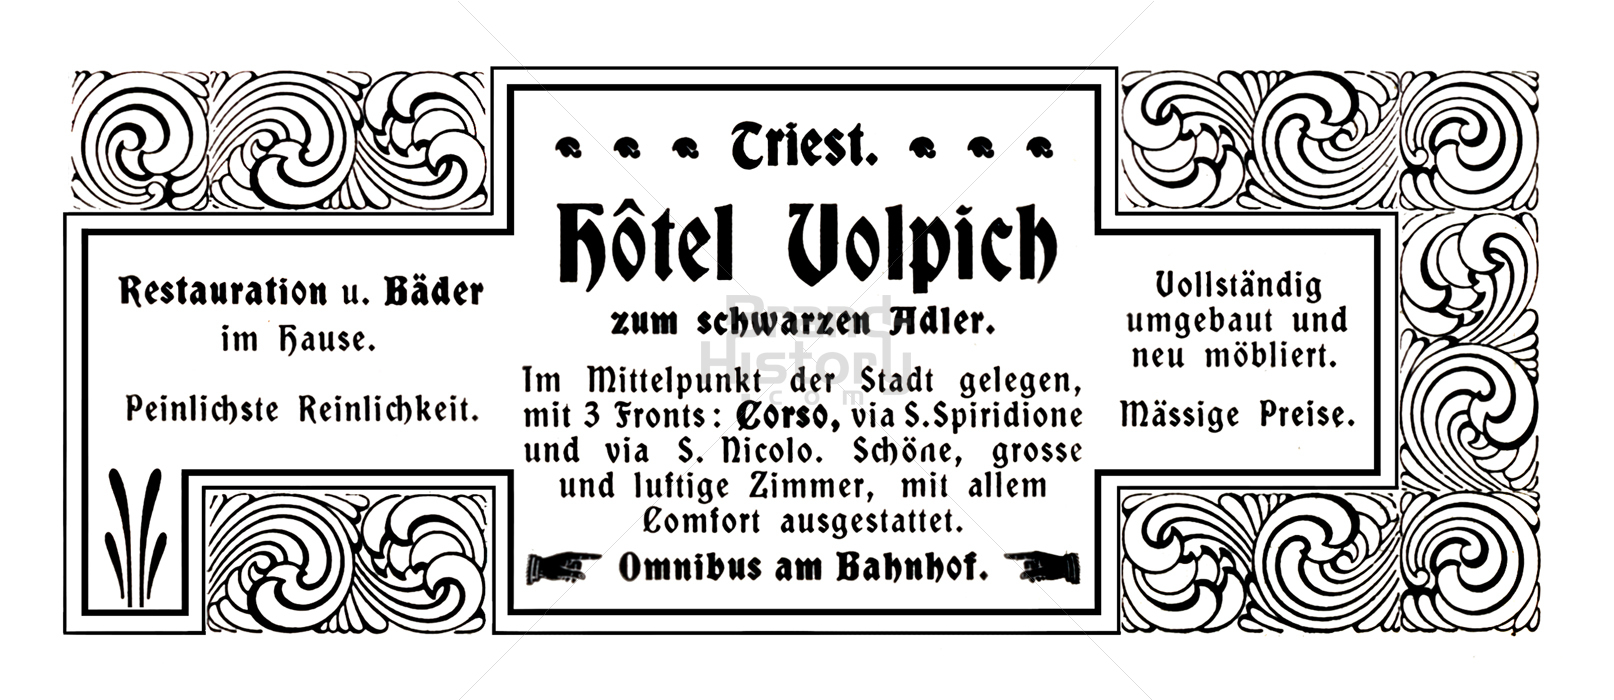 Hotel Volpich, Triest